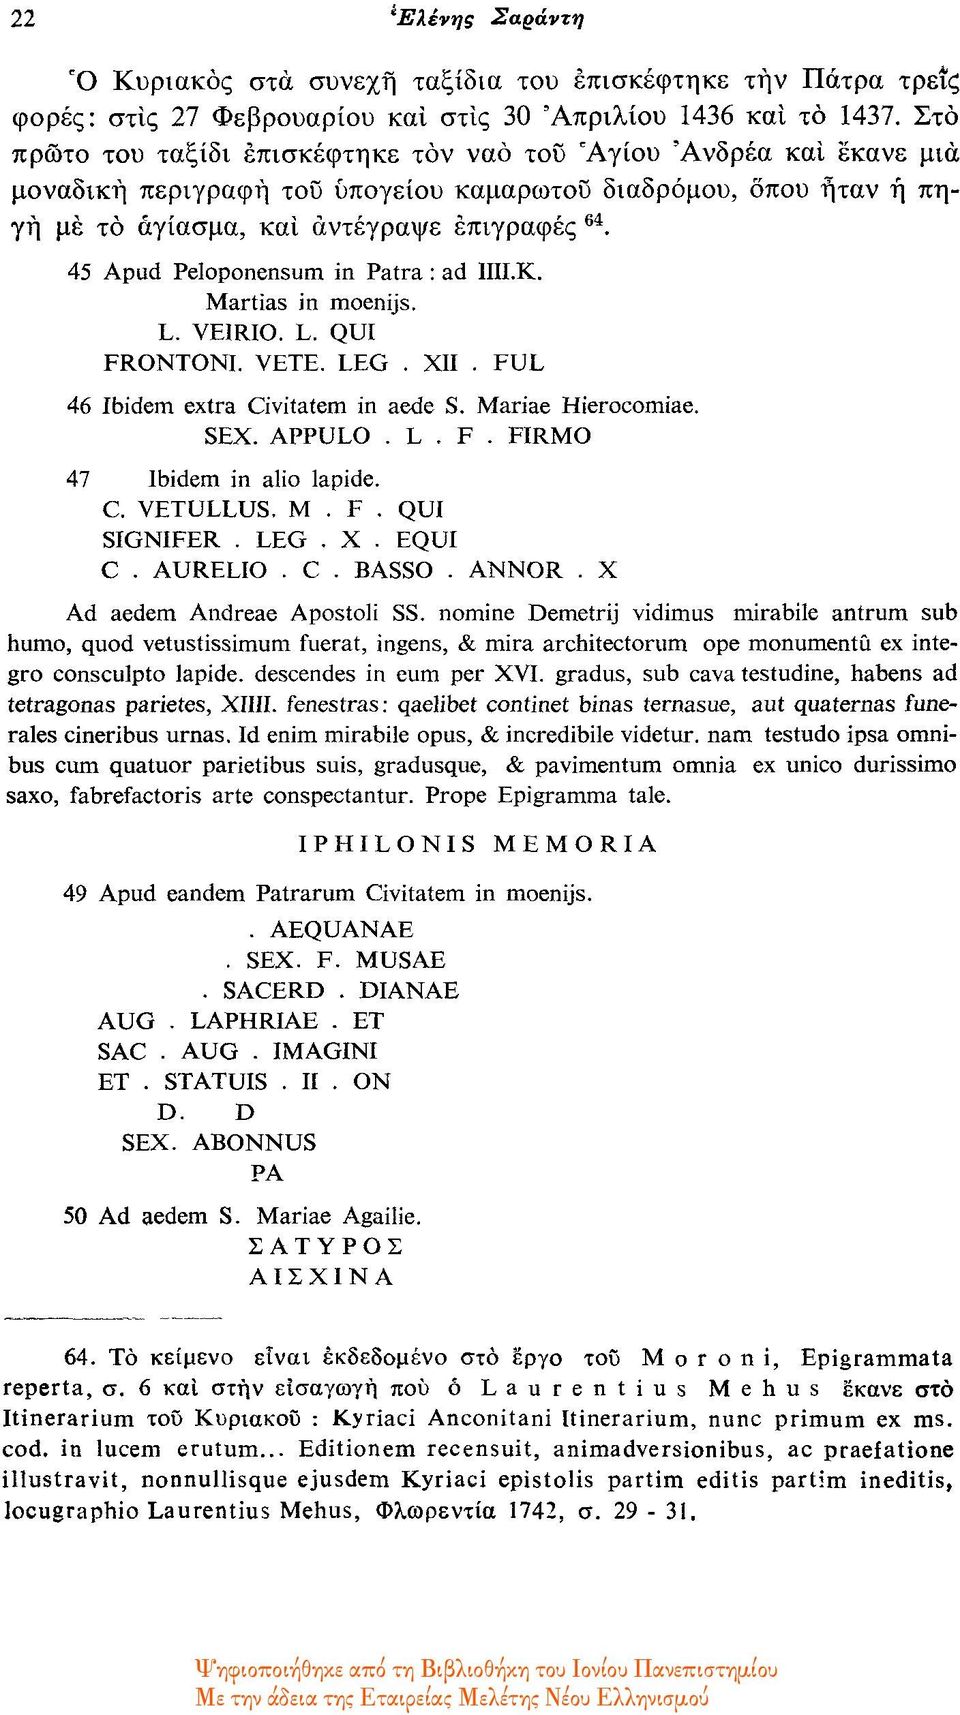 45 Apud Peloponensum in Patra : ad IIII.K. Martias in moenijs. L. VE1RIO. L. QUI FRONTONI. VETE. LEG. XII. FUL 46 Ibidem extra Civitatem in aede S. Mariae Hierocomiae. SEX. APPULO. L. F. FIRMO 47 Ibidem in alio lapide.